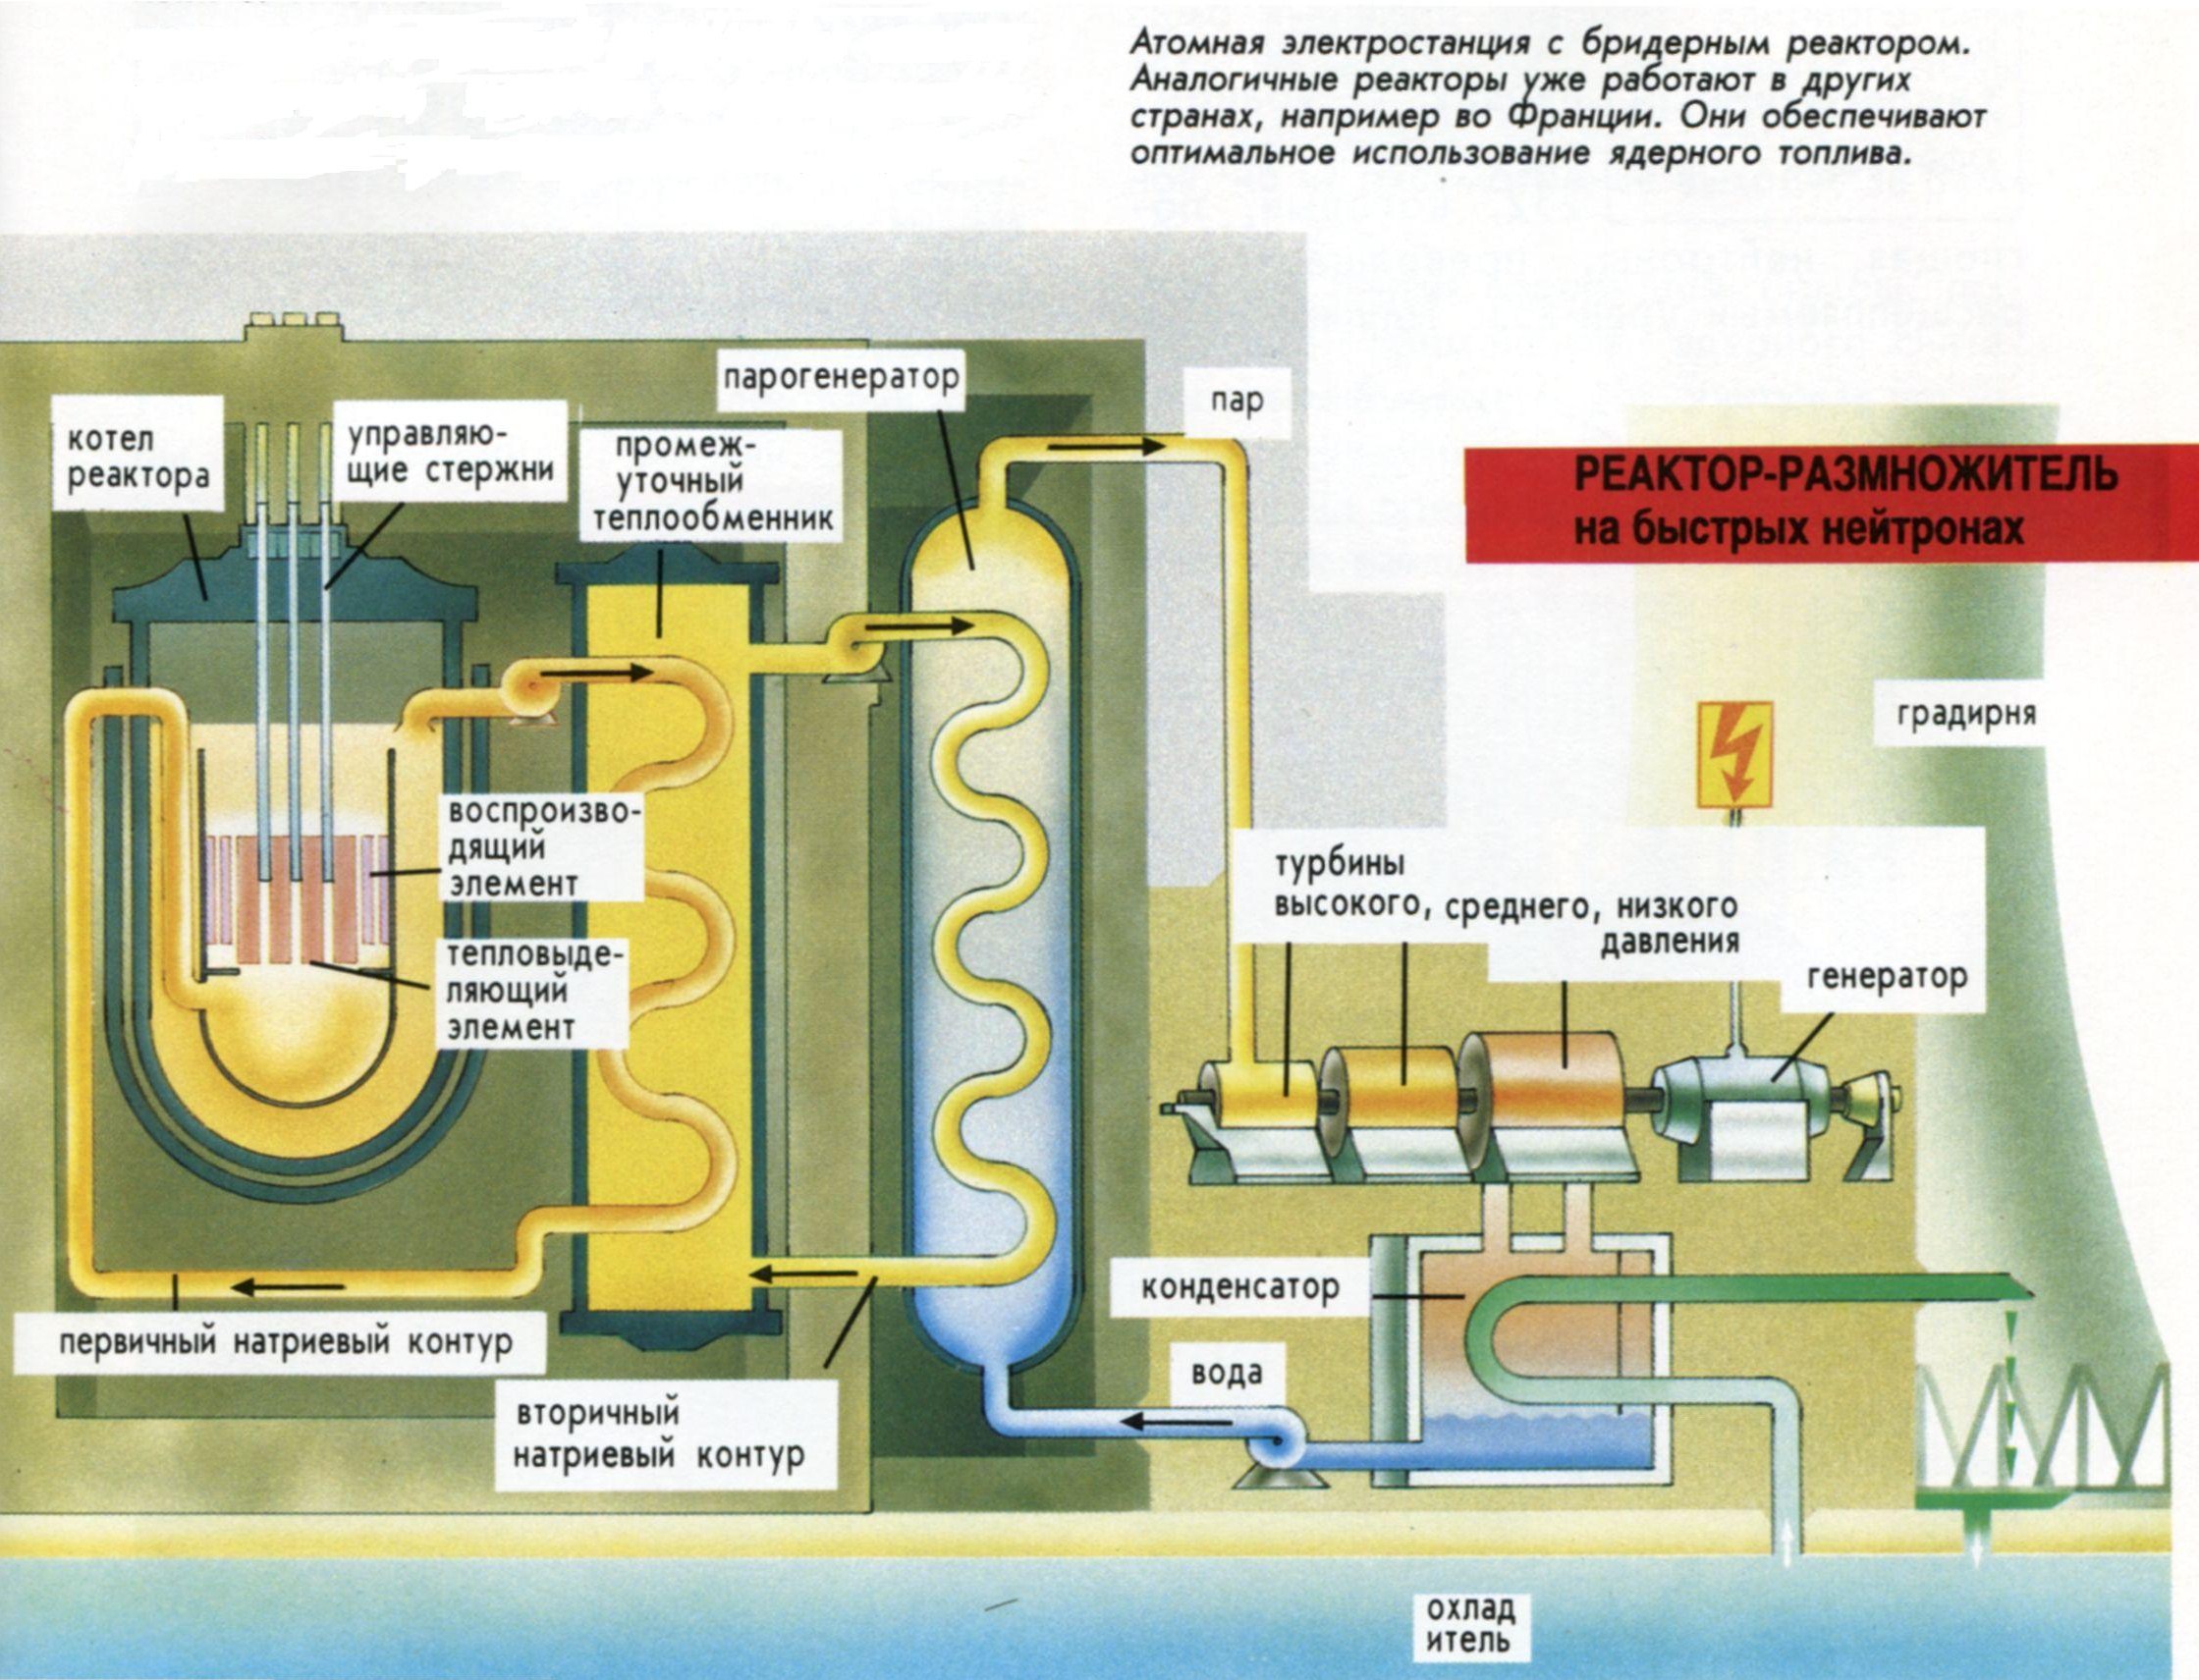 Реакторы на быстрых нейтронах аэс